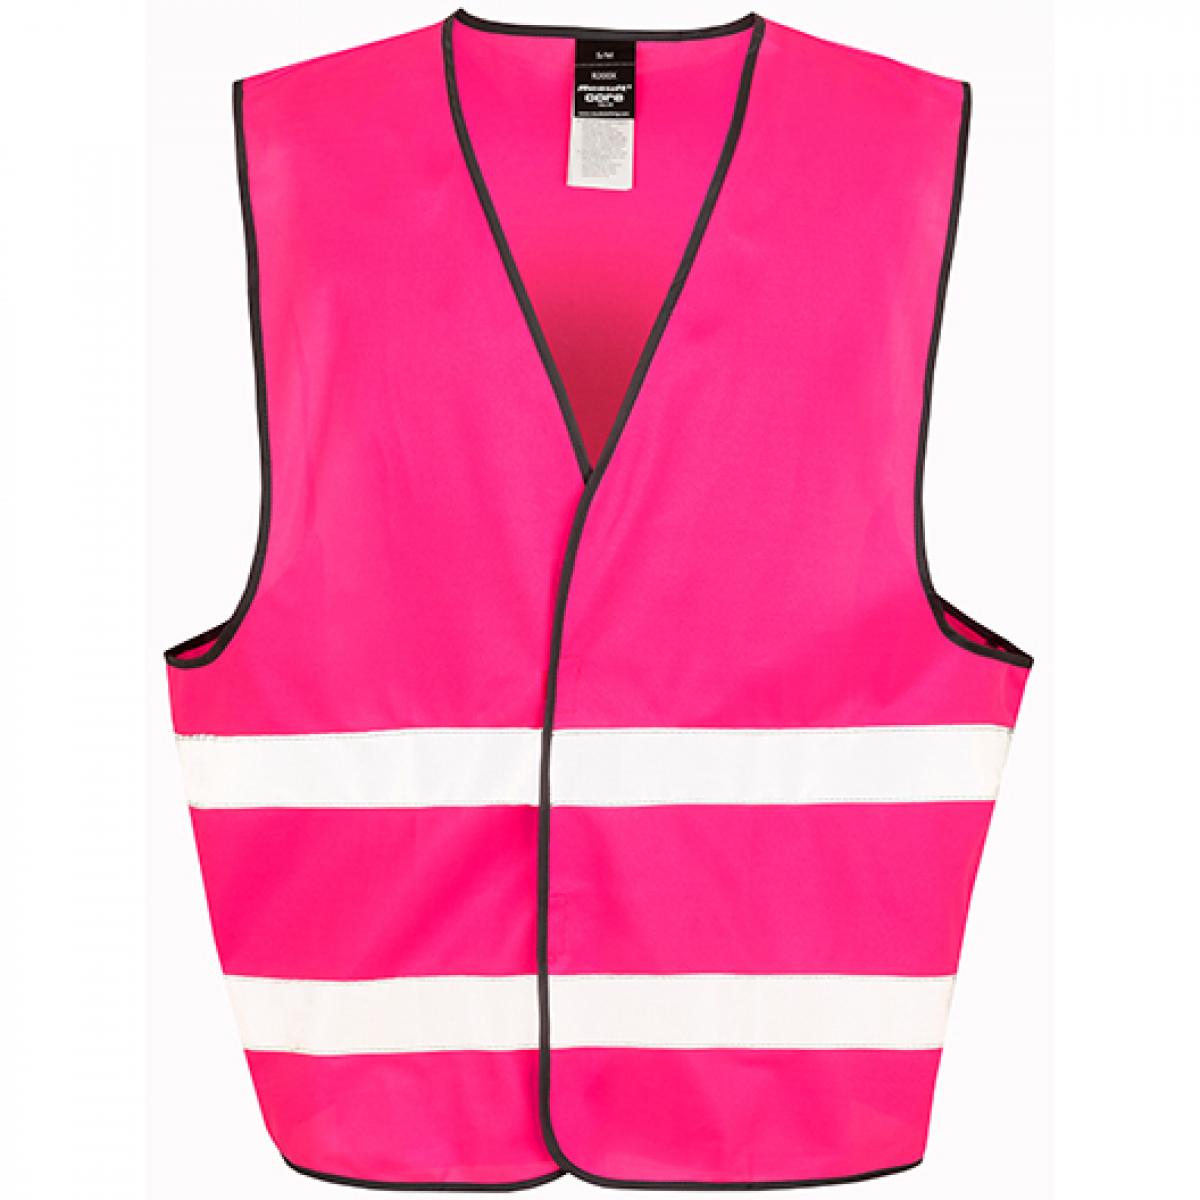 Hersteller: Result Core Herstellernummer: R200X Artikelbezeichnung: Motorist Safety Vest / ISOEN20471:2013, Klasse 2 Farbe: Fluorescent Pink